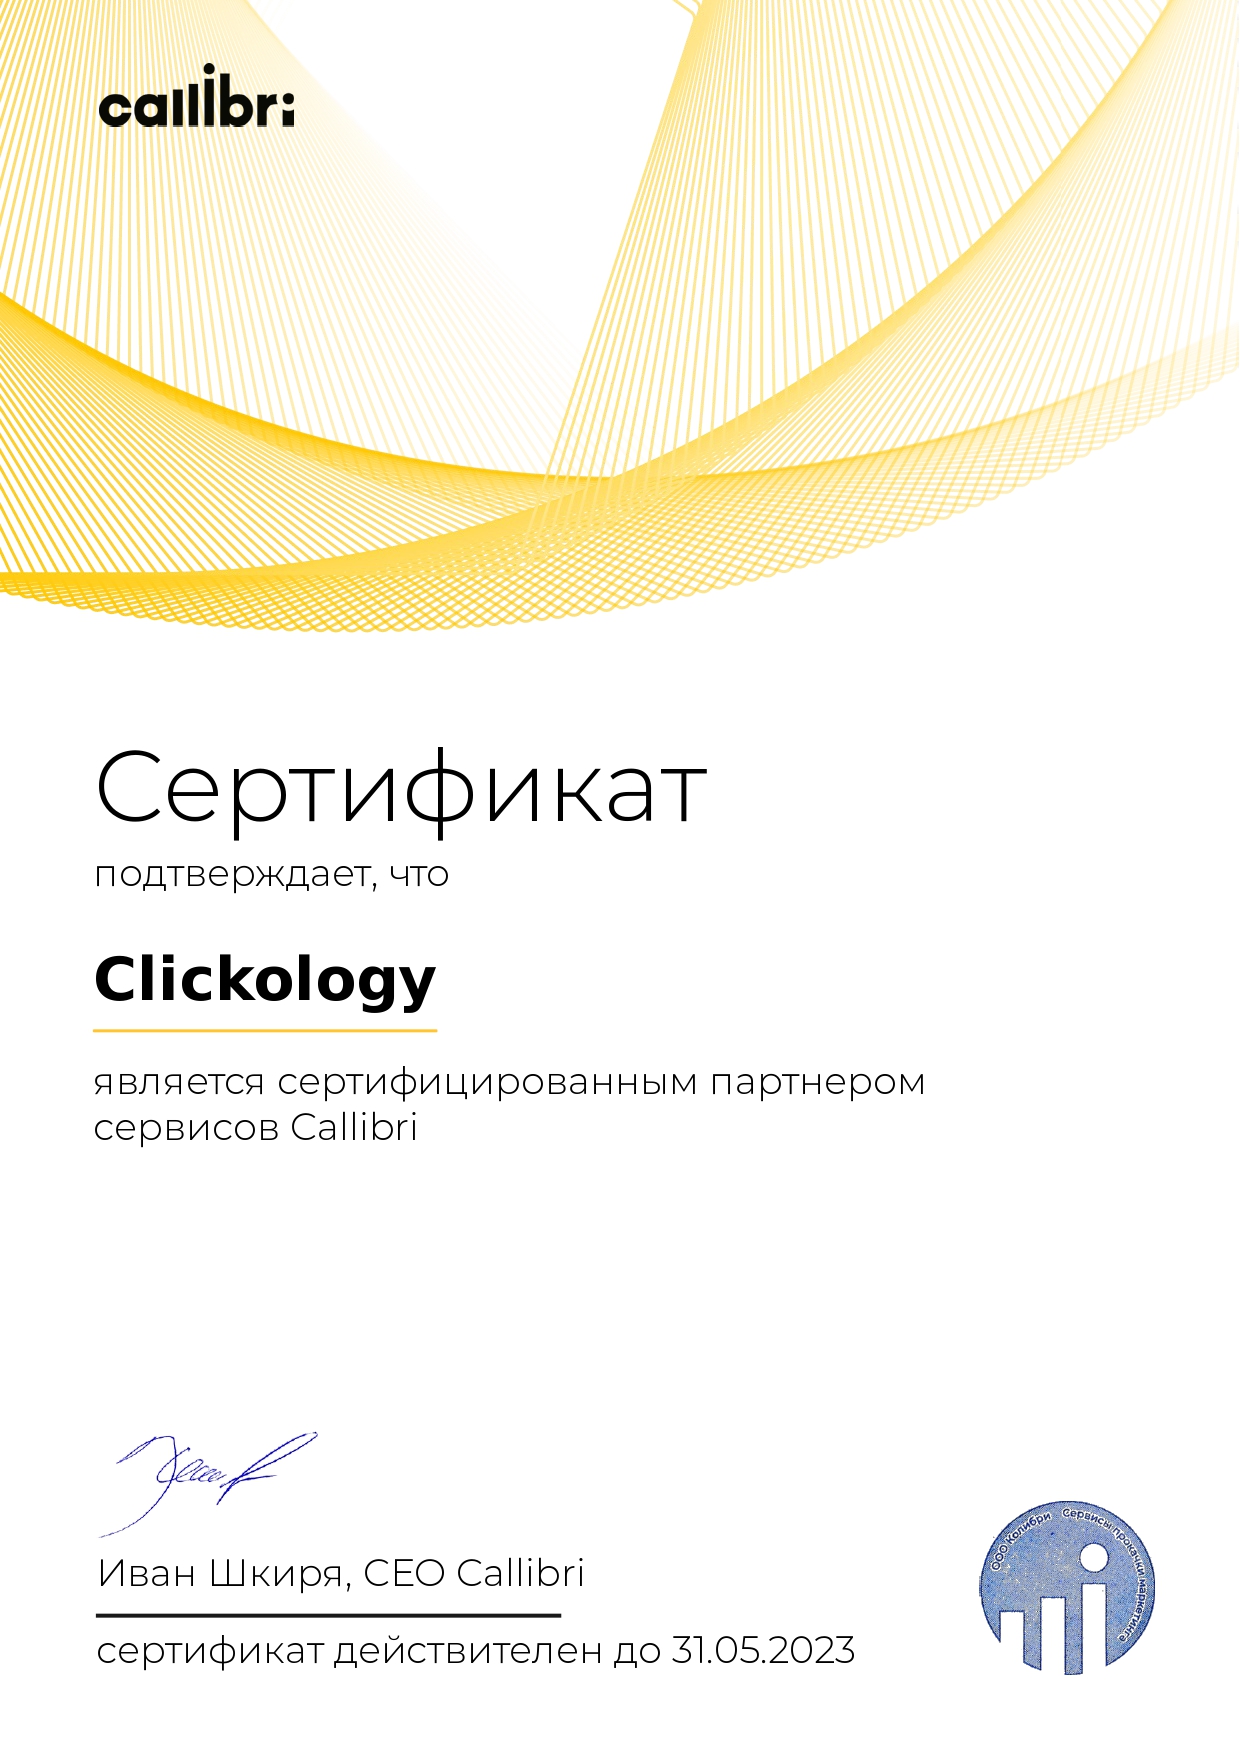 Clickology - сертифицированный партнёр Callibri 2022